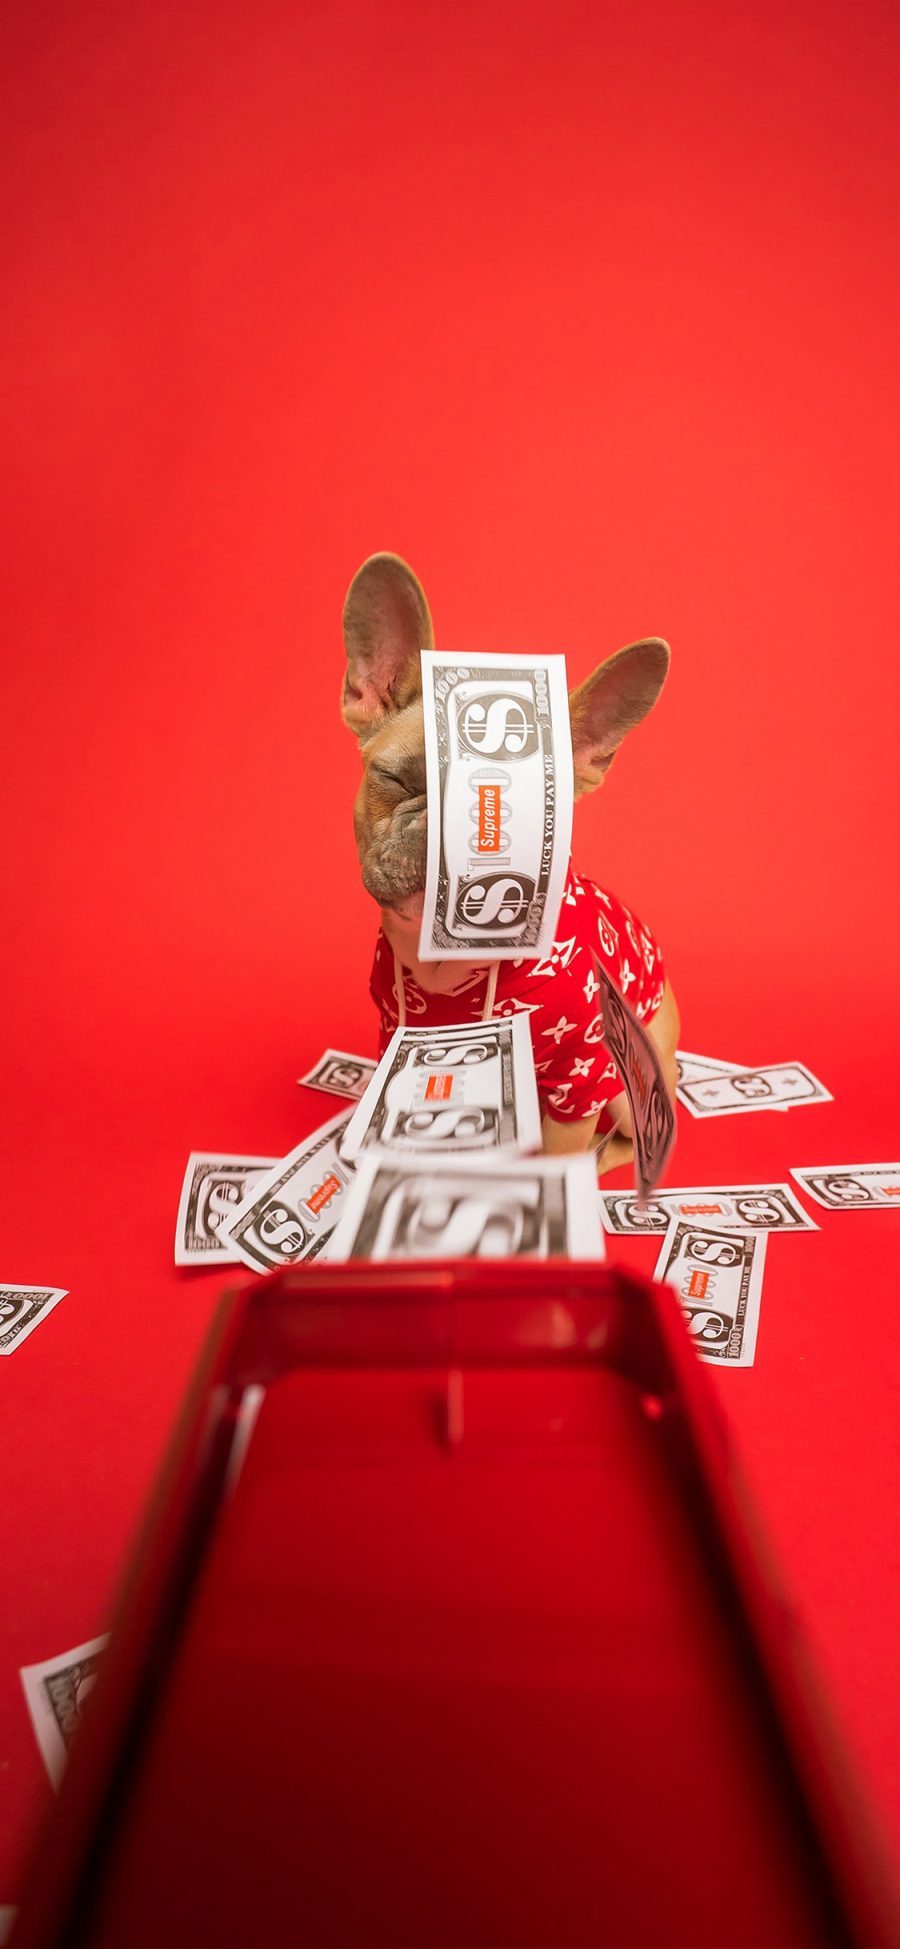 [2436×1125]法斗 钞票 红色 犬 汪星人 宠物 苹果手机壁纸图片